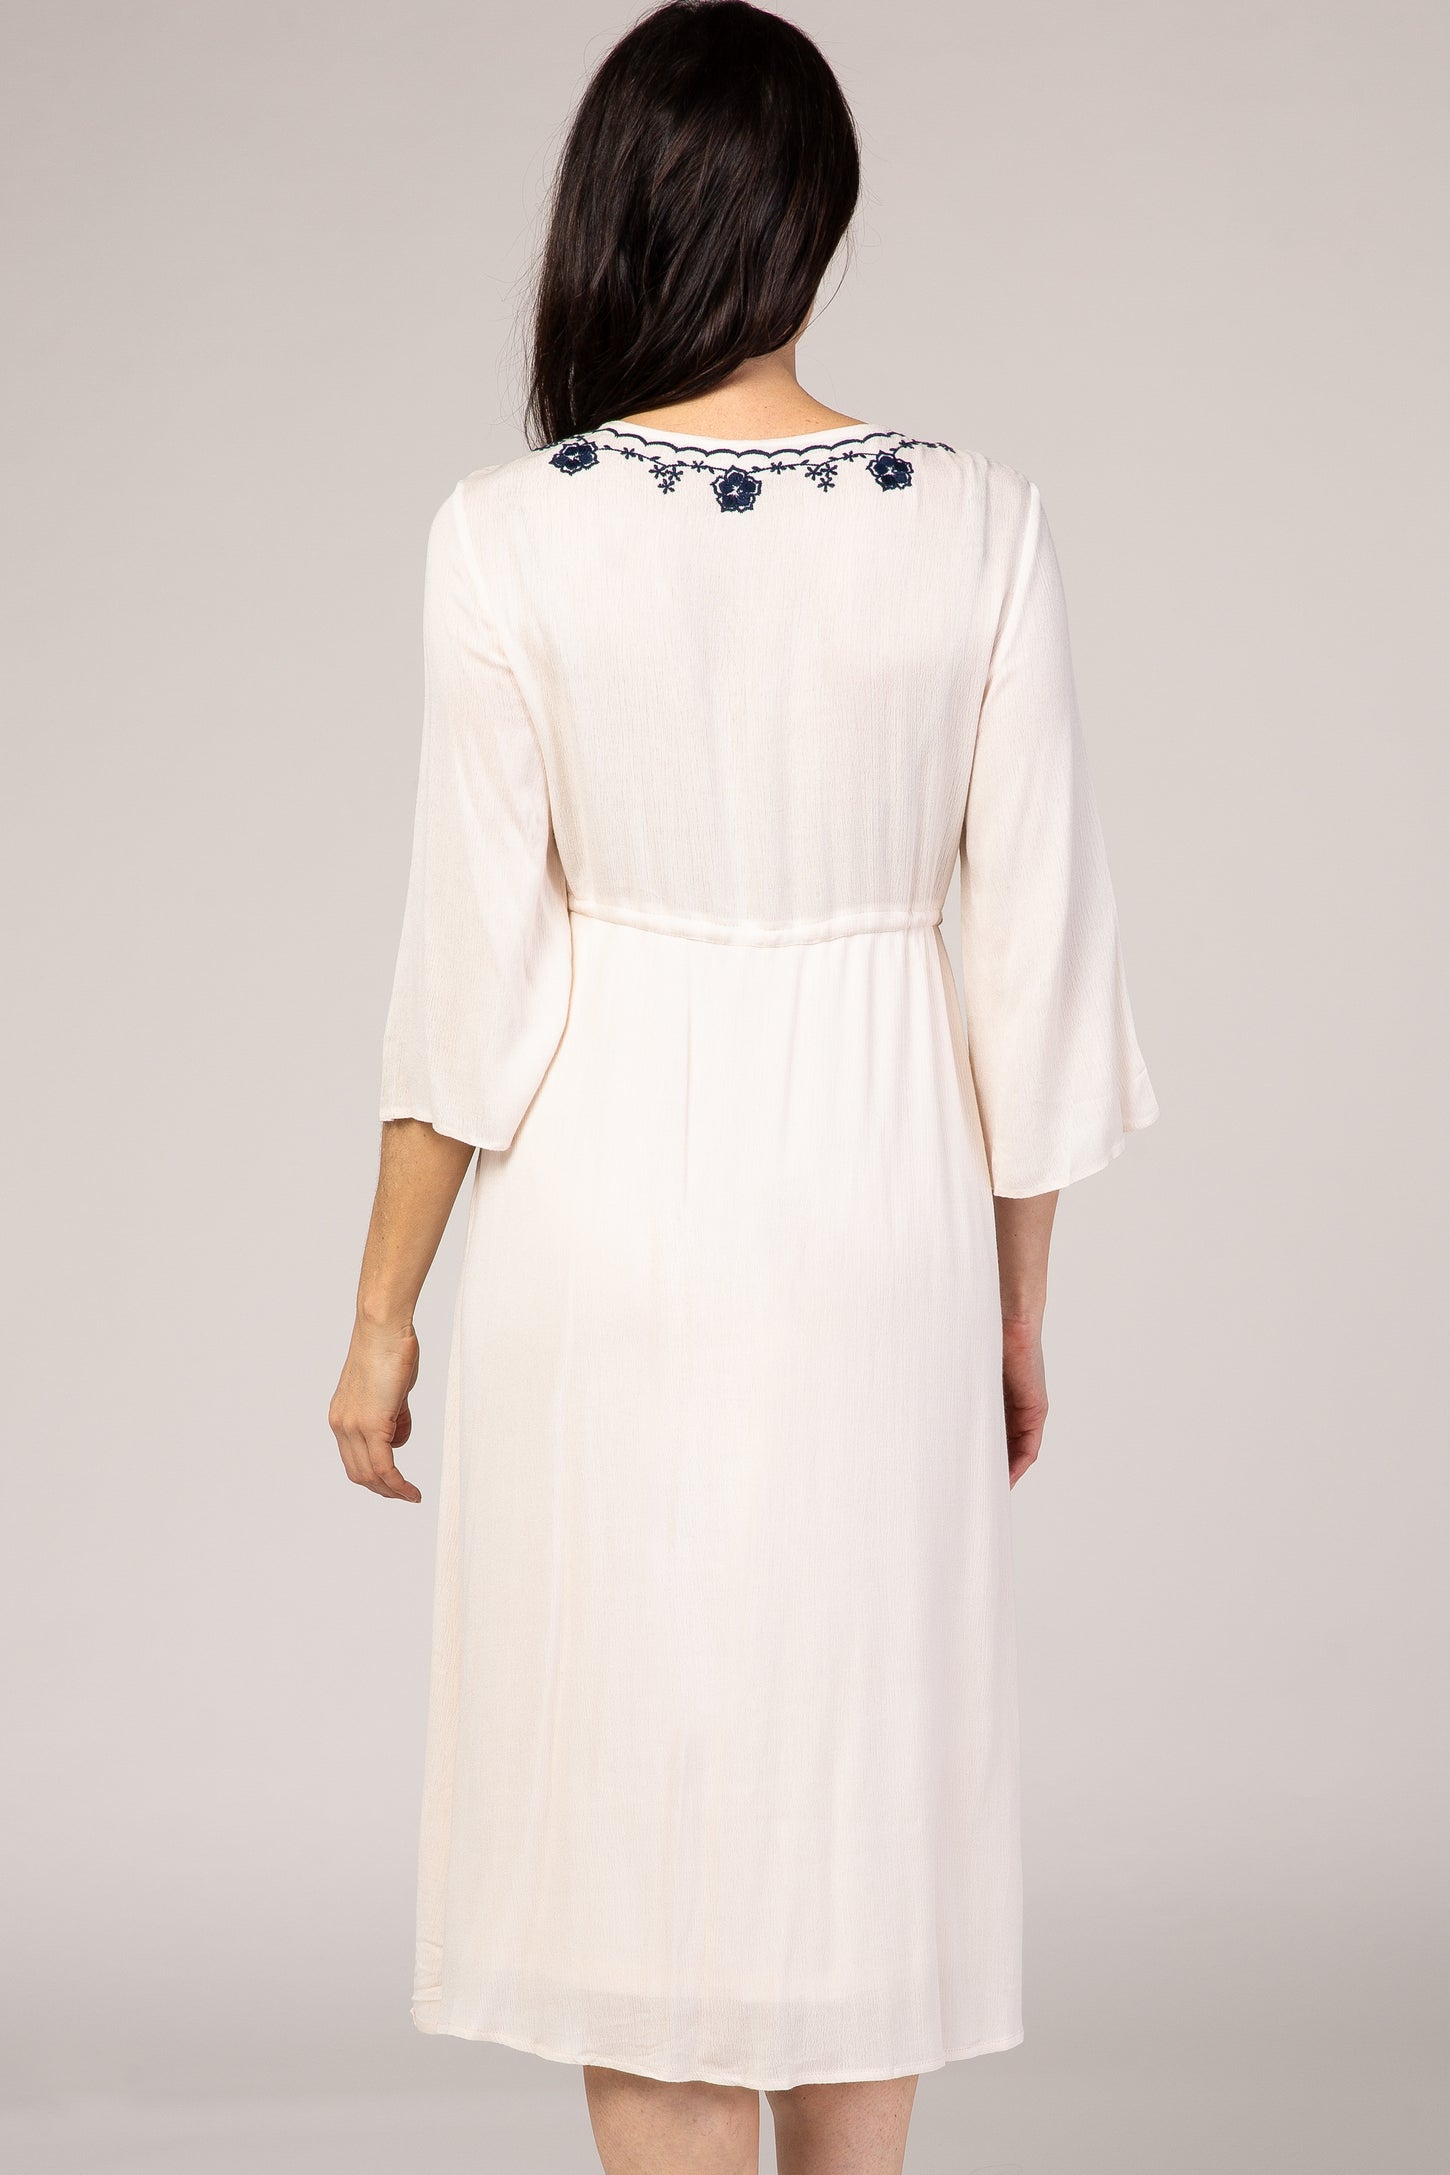 Buy FOREVER NEW Embroidered V-Neck Polyester Womens Regular Dress